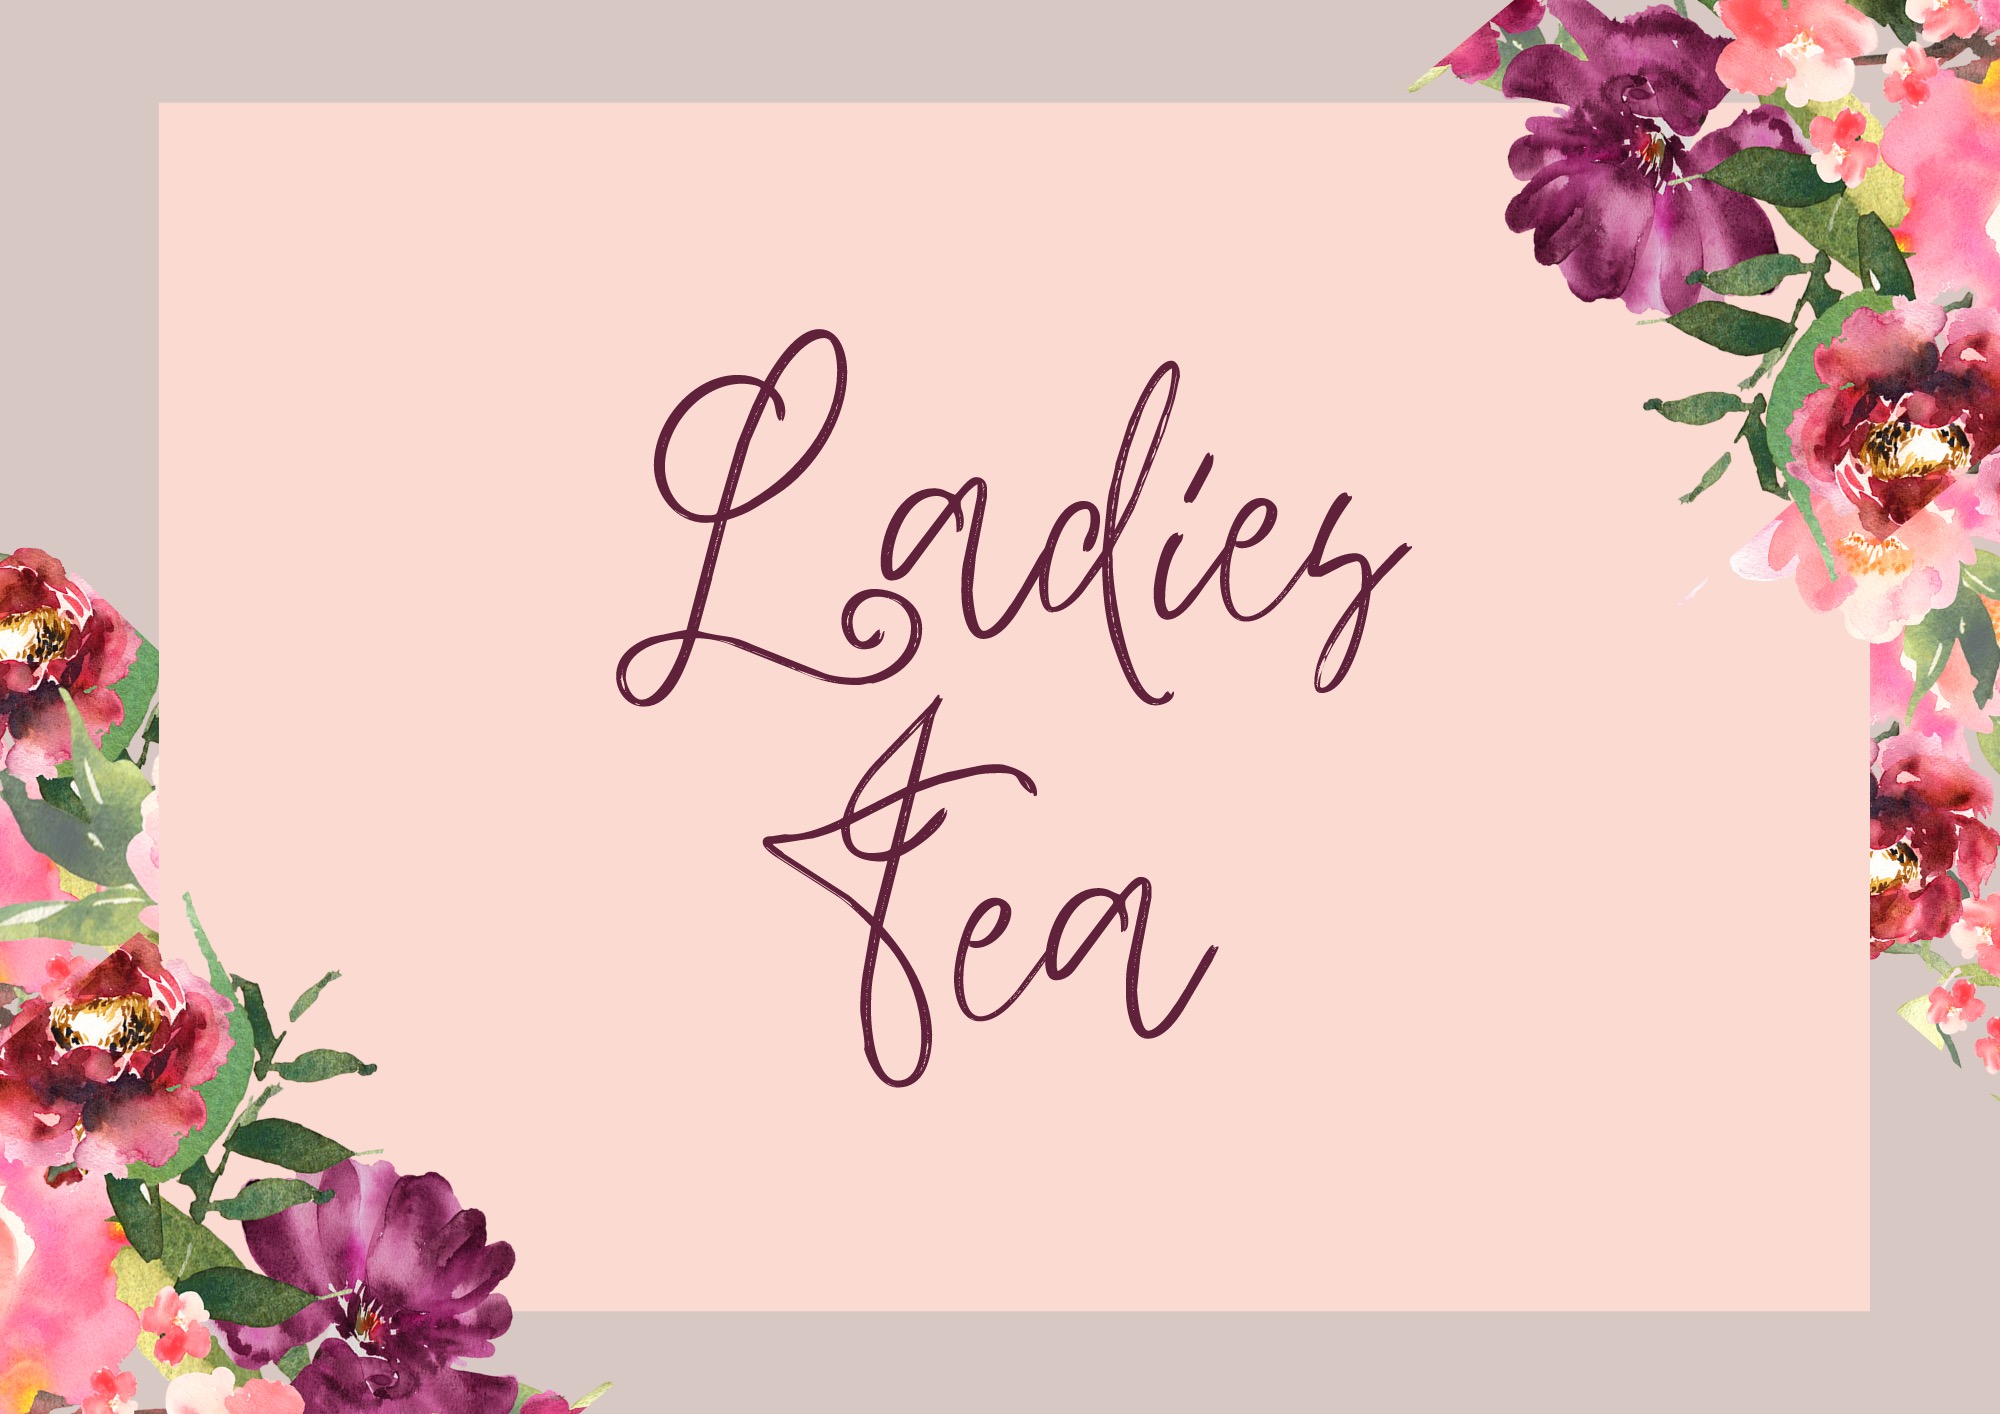 Ladies Tea